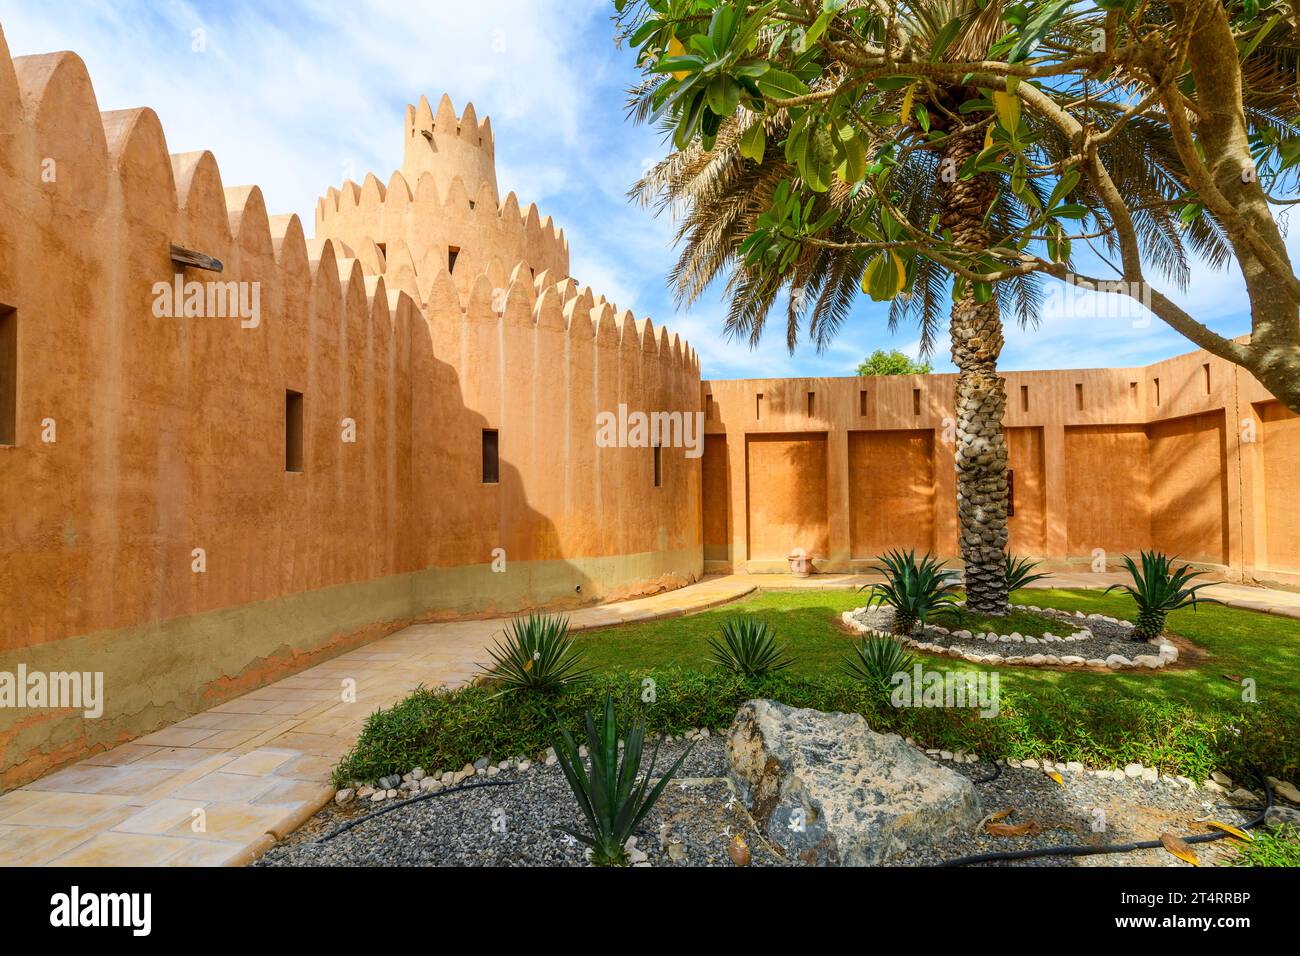 Ein kleiner Garten innerhalb der Mauern des Al Ain Palace Museum oder Sheikh Zayed Palace Museum, ein beliebter Halt in der Wüste. Stockfoto